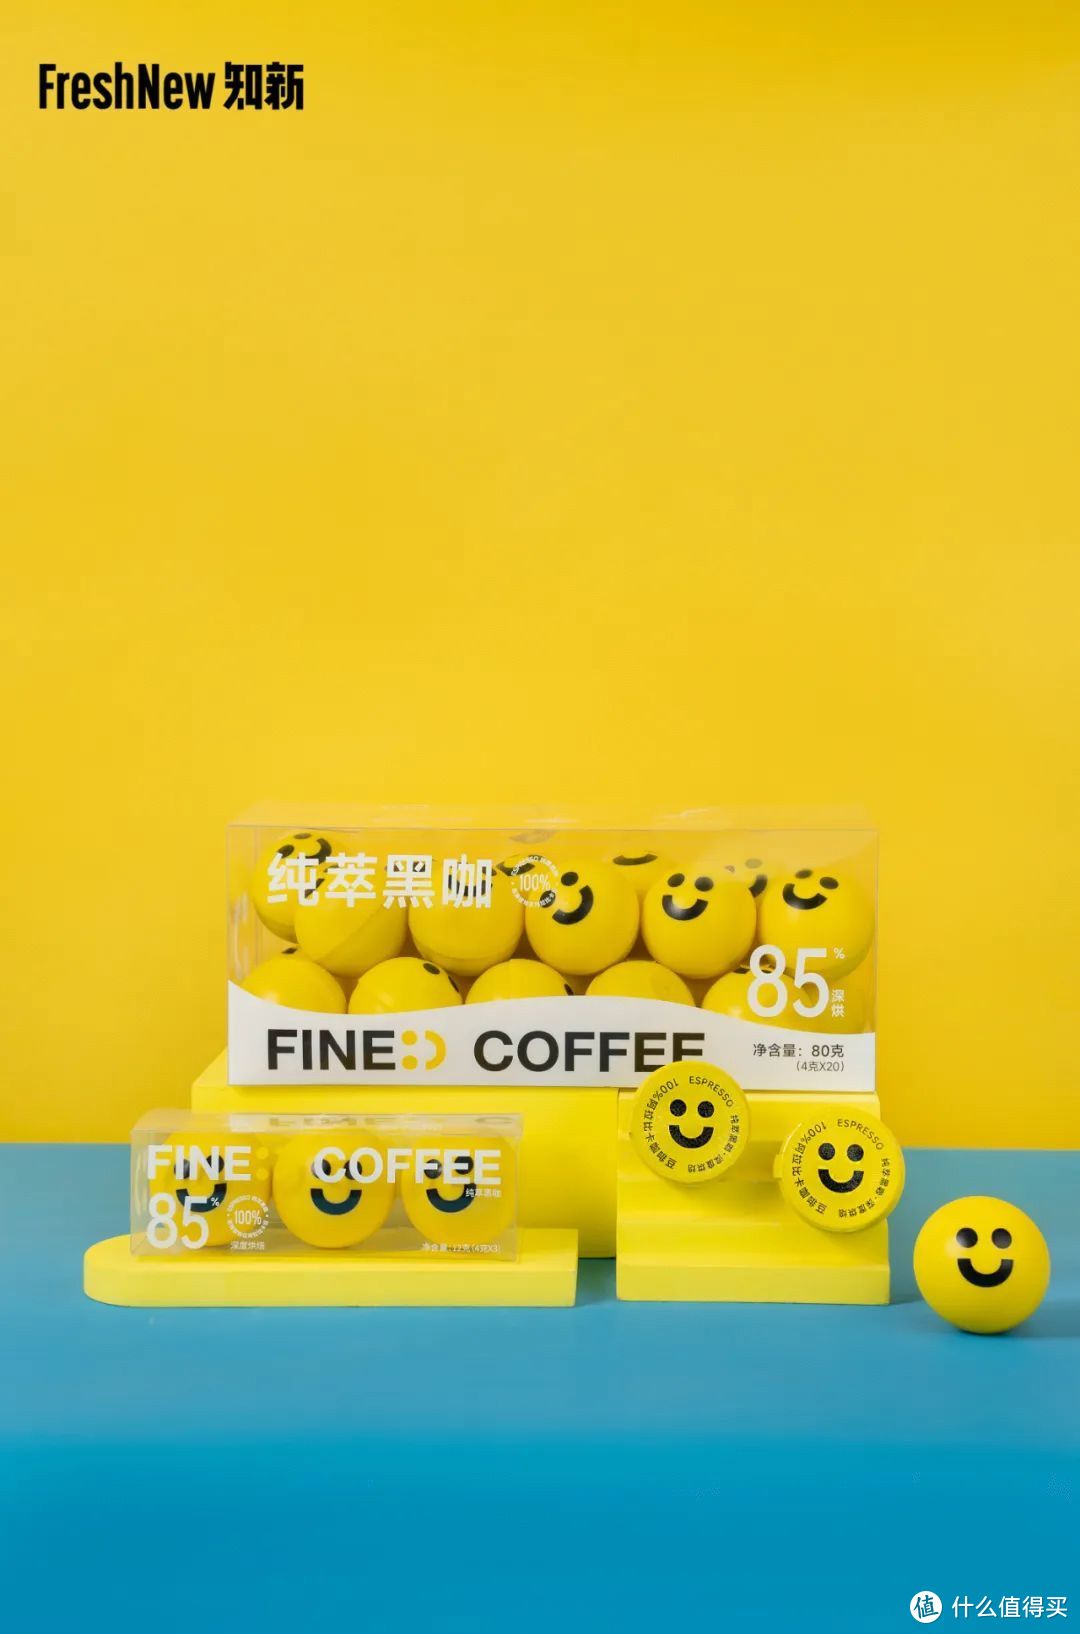 「枫岸咖啡」创始人7问：好看皮囊+有趣灵魂+好味道=良性循环的咖啡品牌